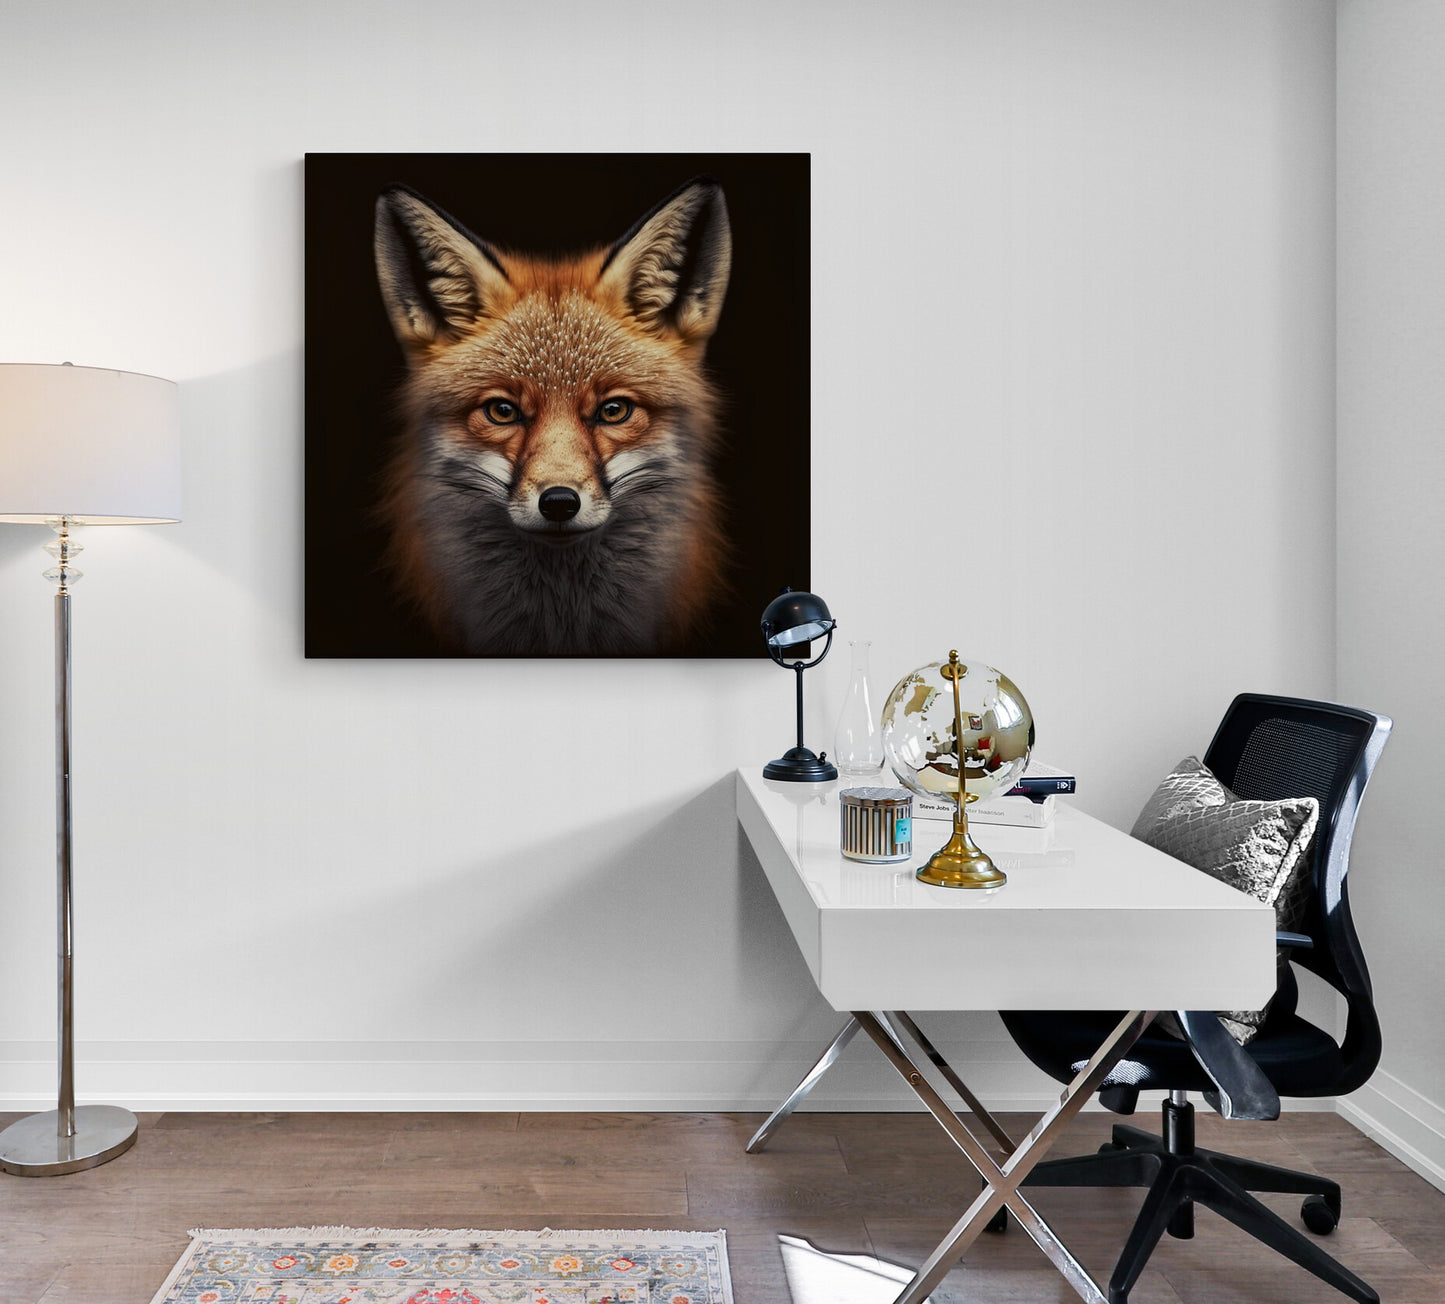 Tableau decoration renard en portrait photographie sur fond noir, renard roux au pelage touffu dans bureau